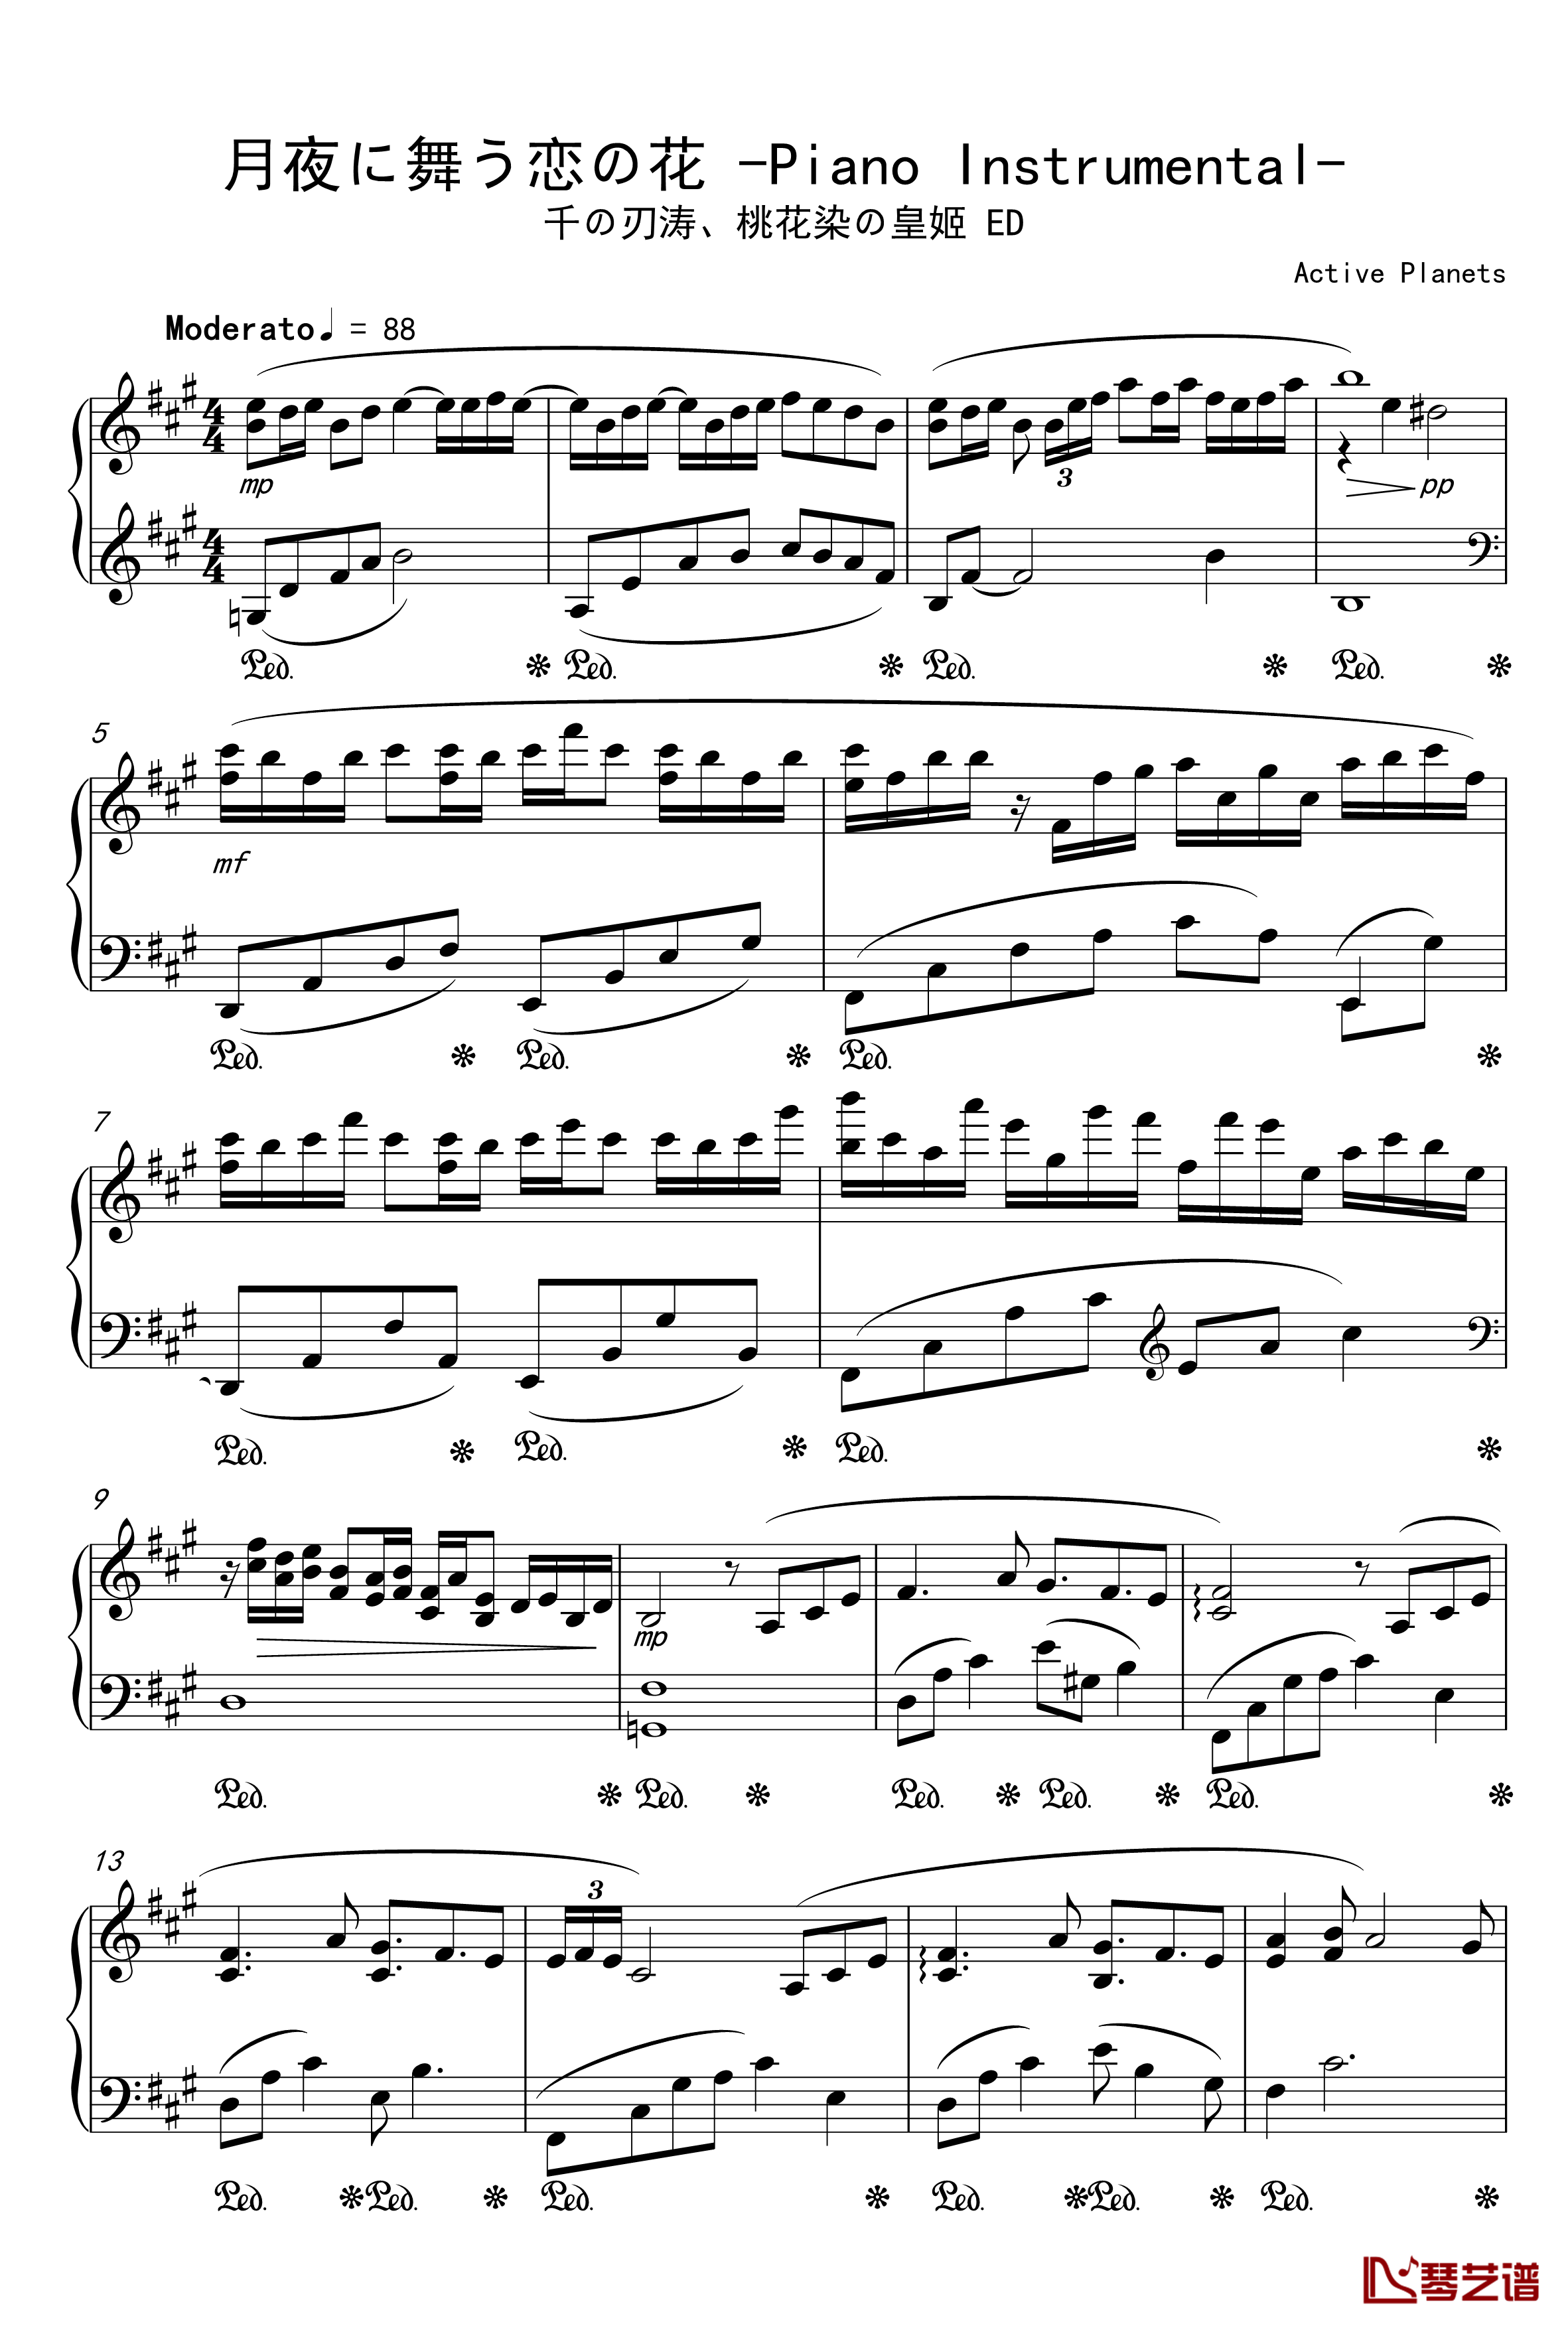 月夜に舞う恋の花-Piano Instrumental-钢琴谱-千の刃涛1